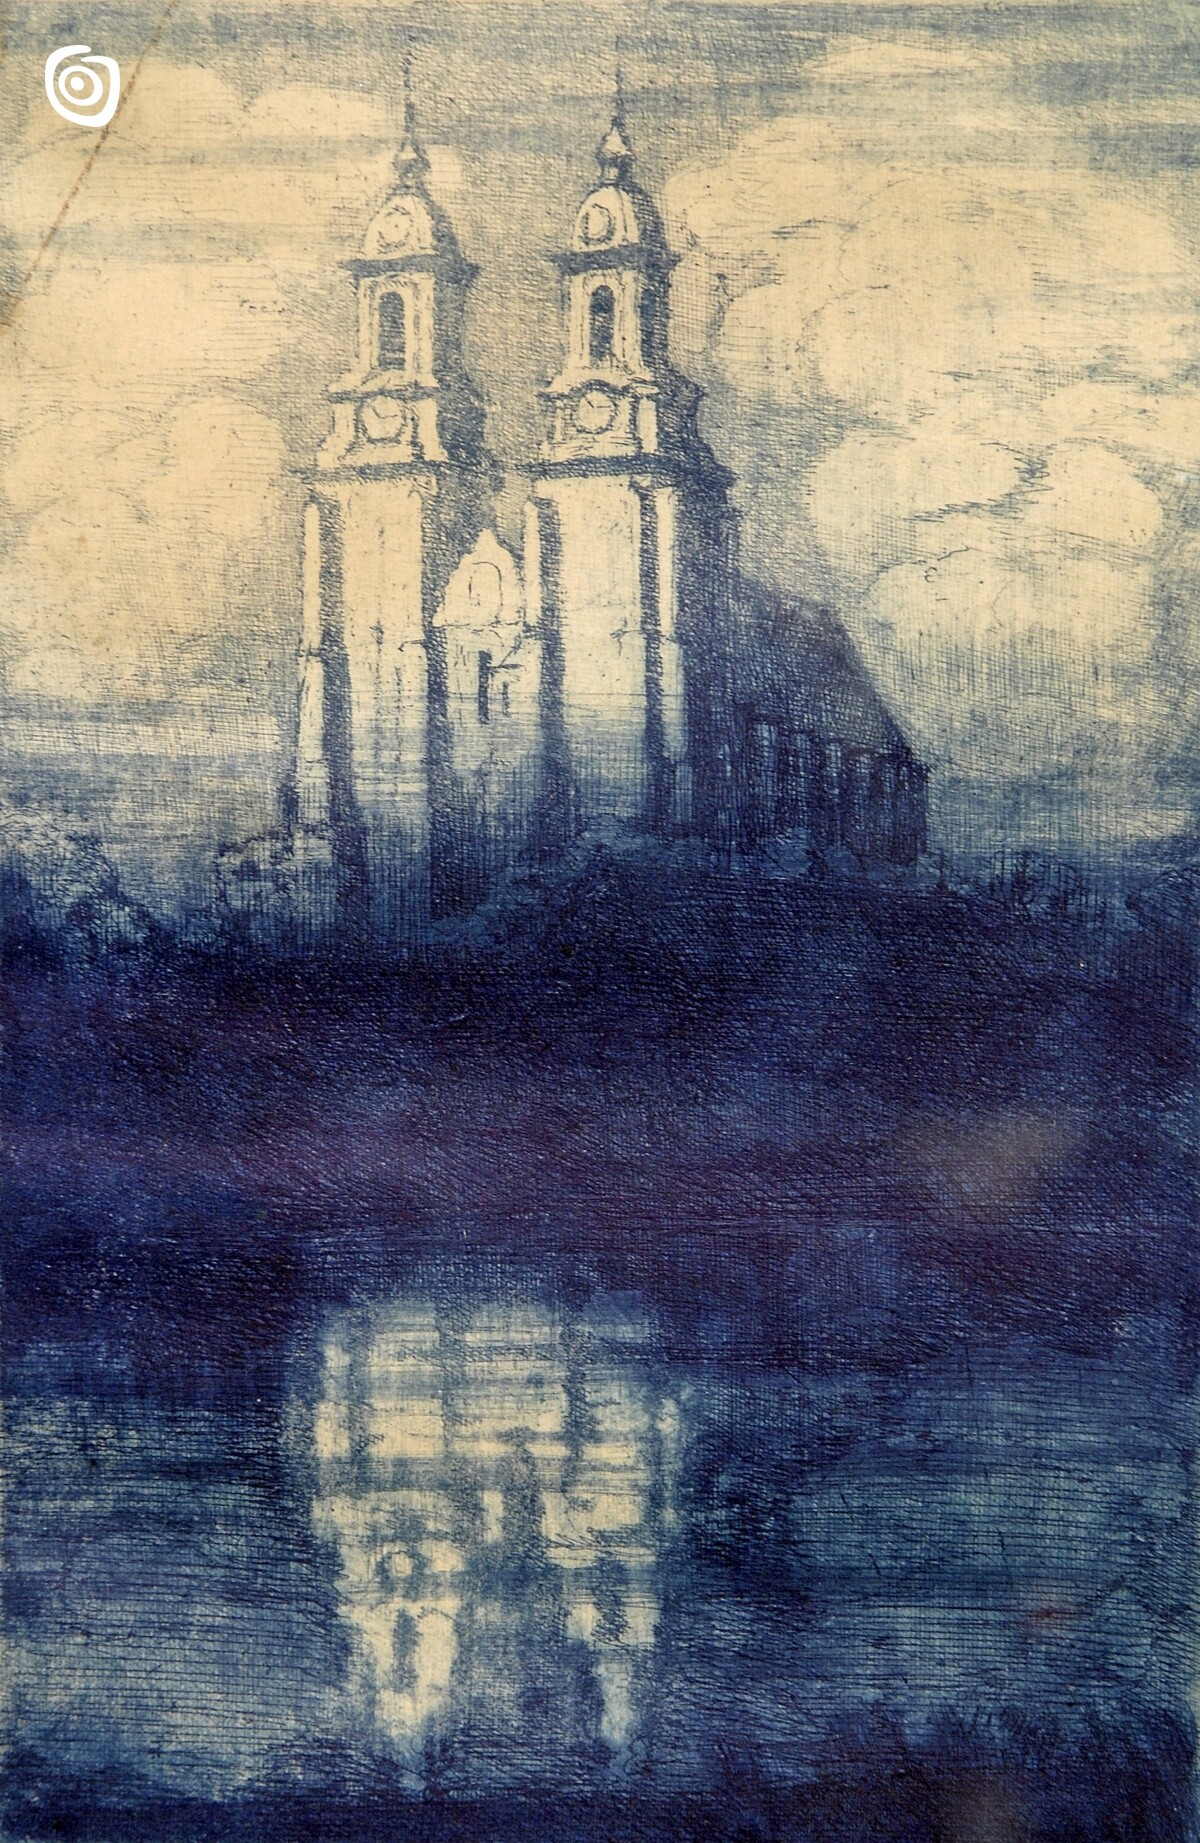 ,,Katedra w Gnieźnie", Franciszek Tatula, Poznań, XIX-XX w.